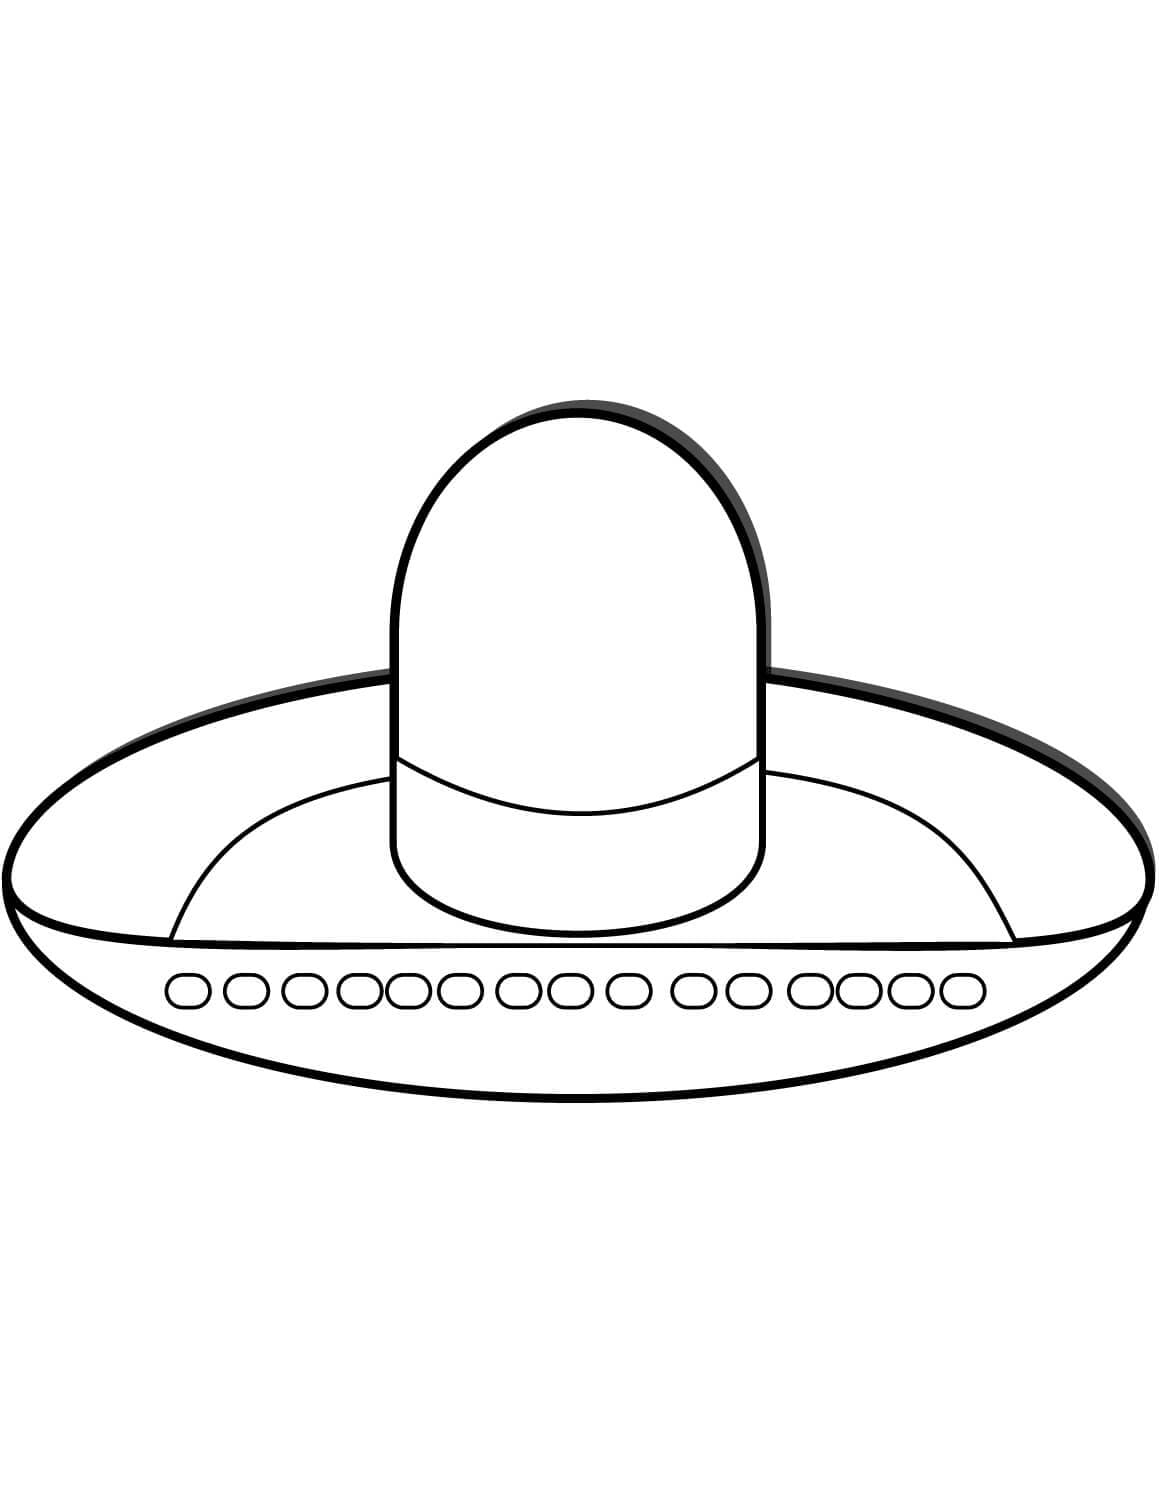 Sombrero Hat Image